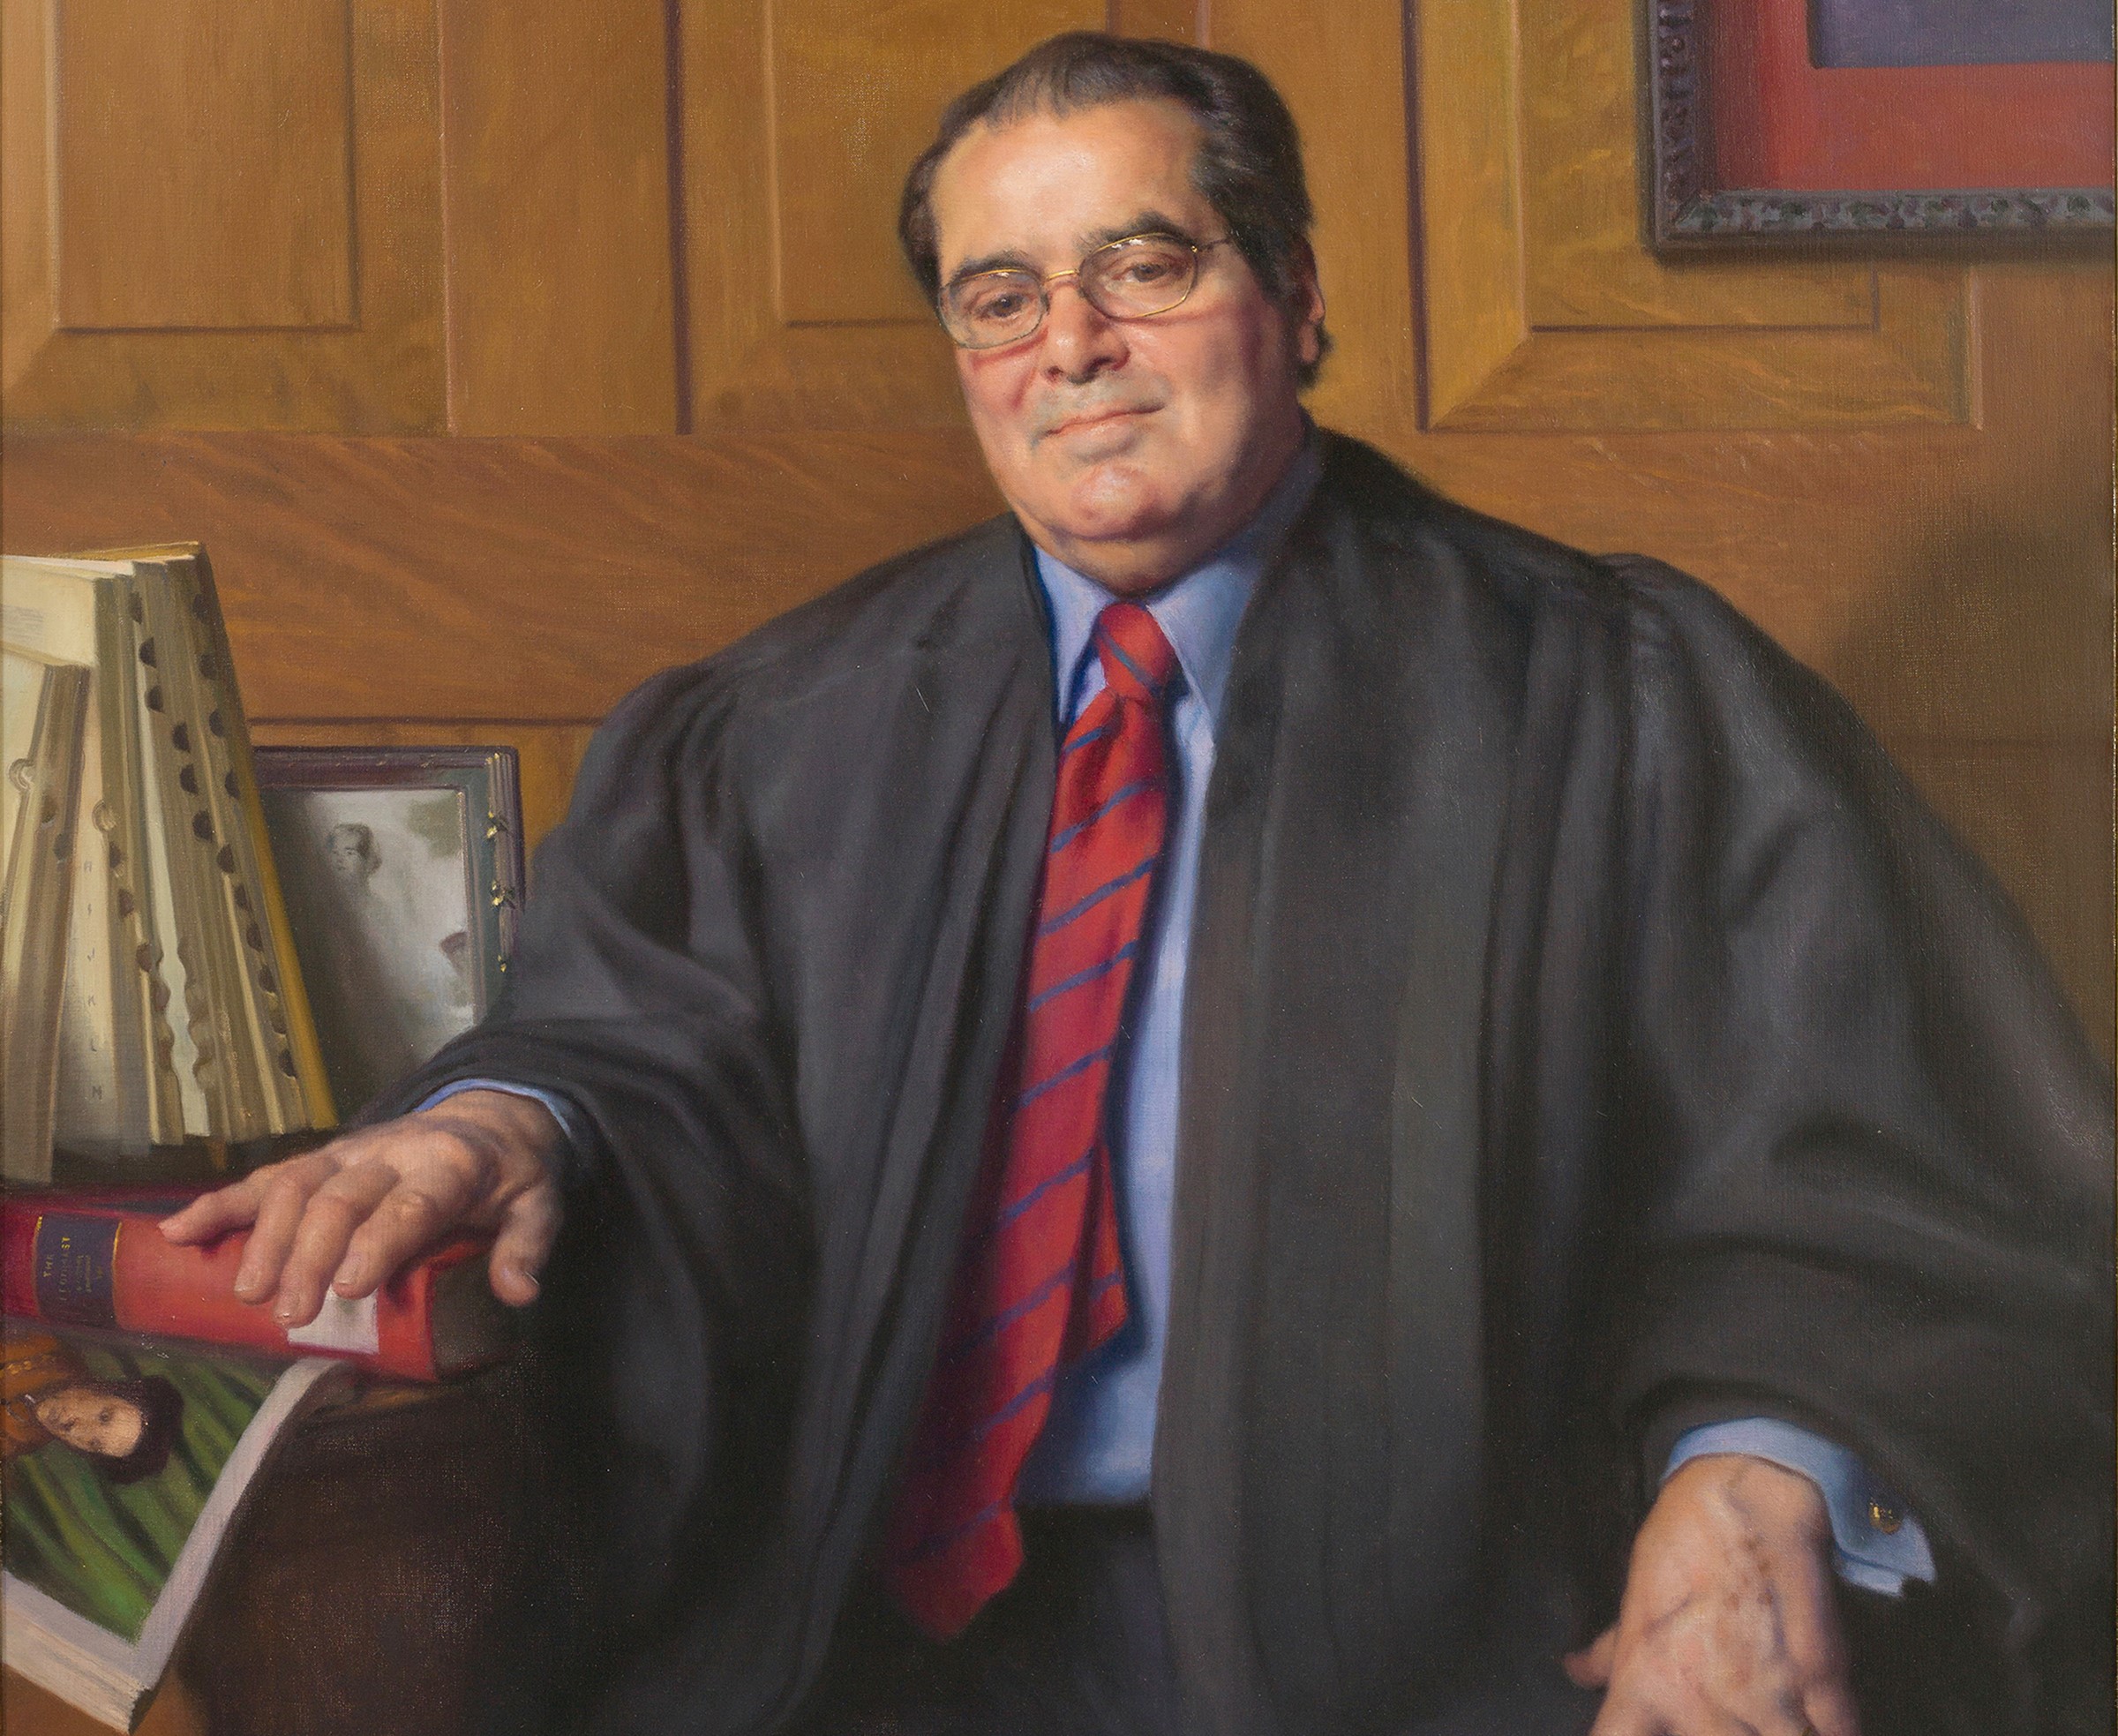 Antonin Scalia's official Supreme Court portrait.